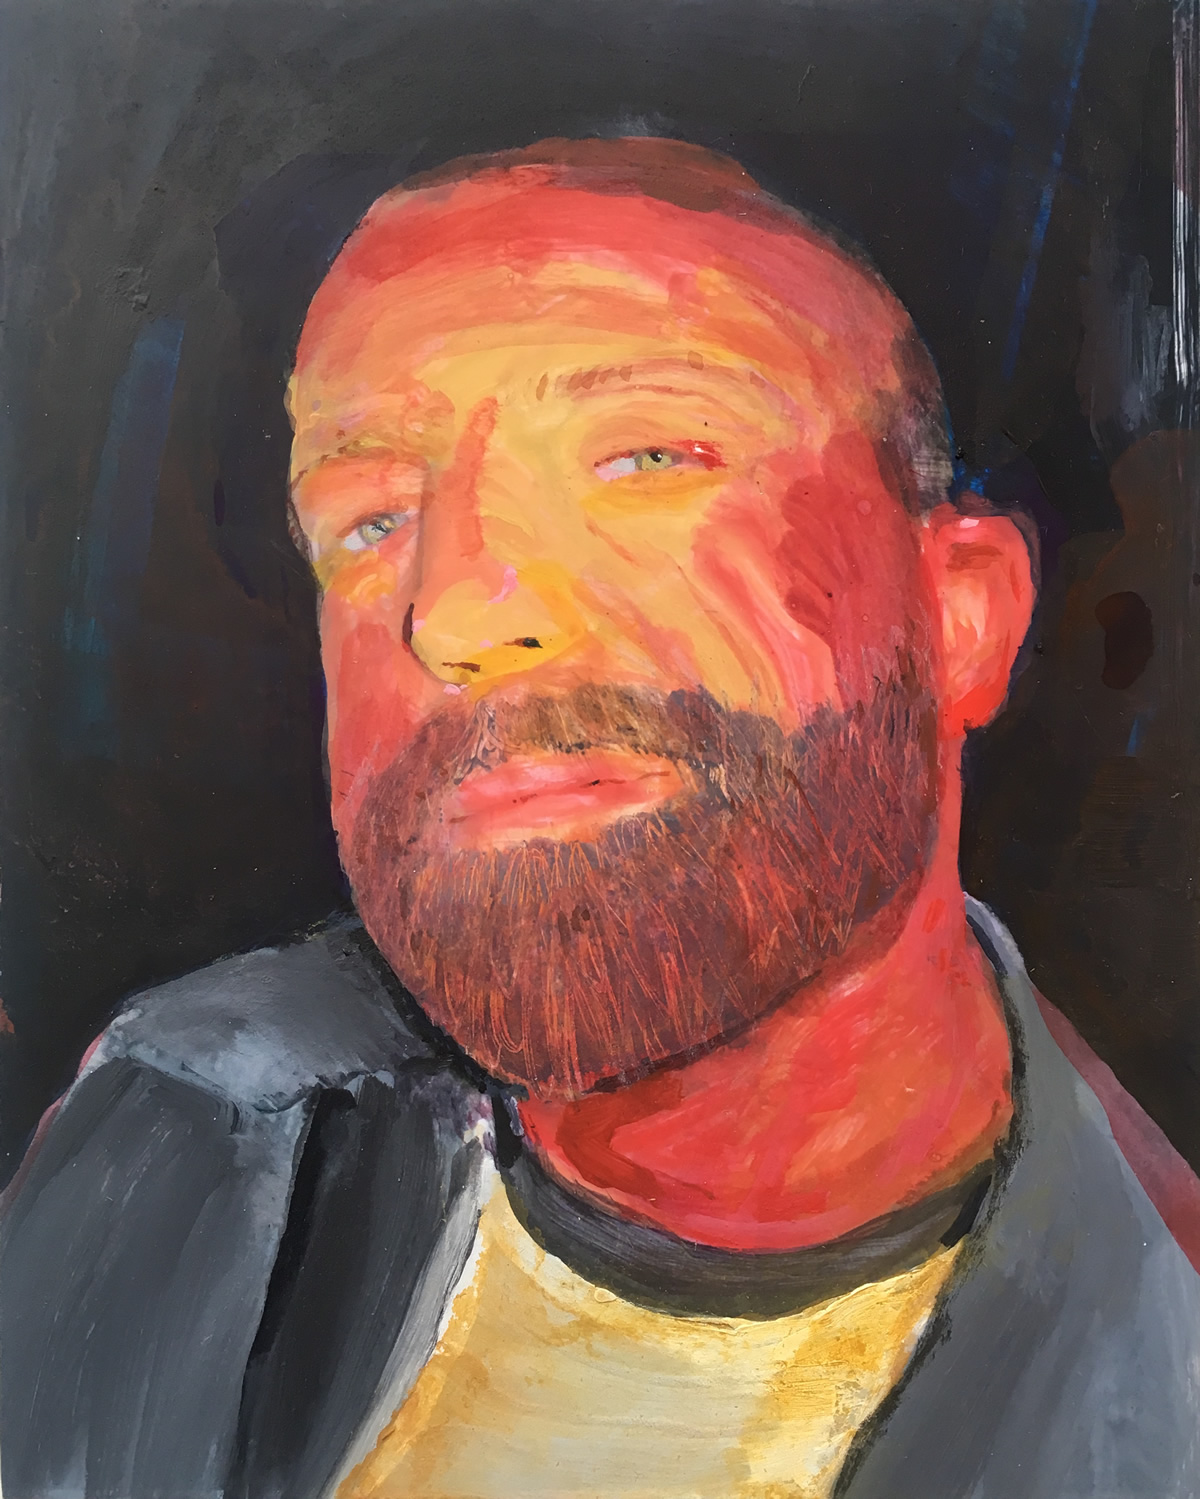 A portrait in progress of a bearded man